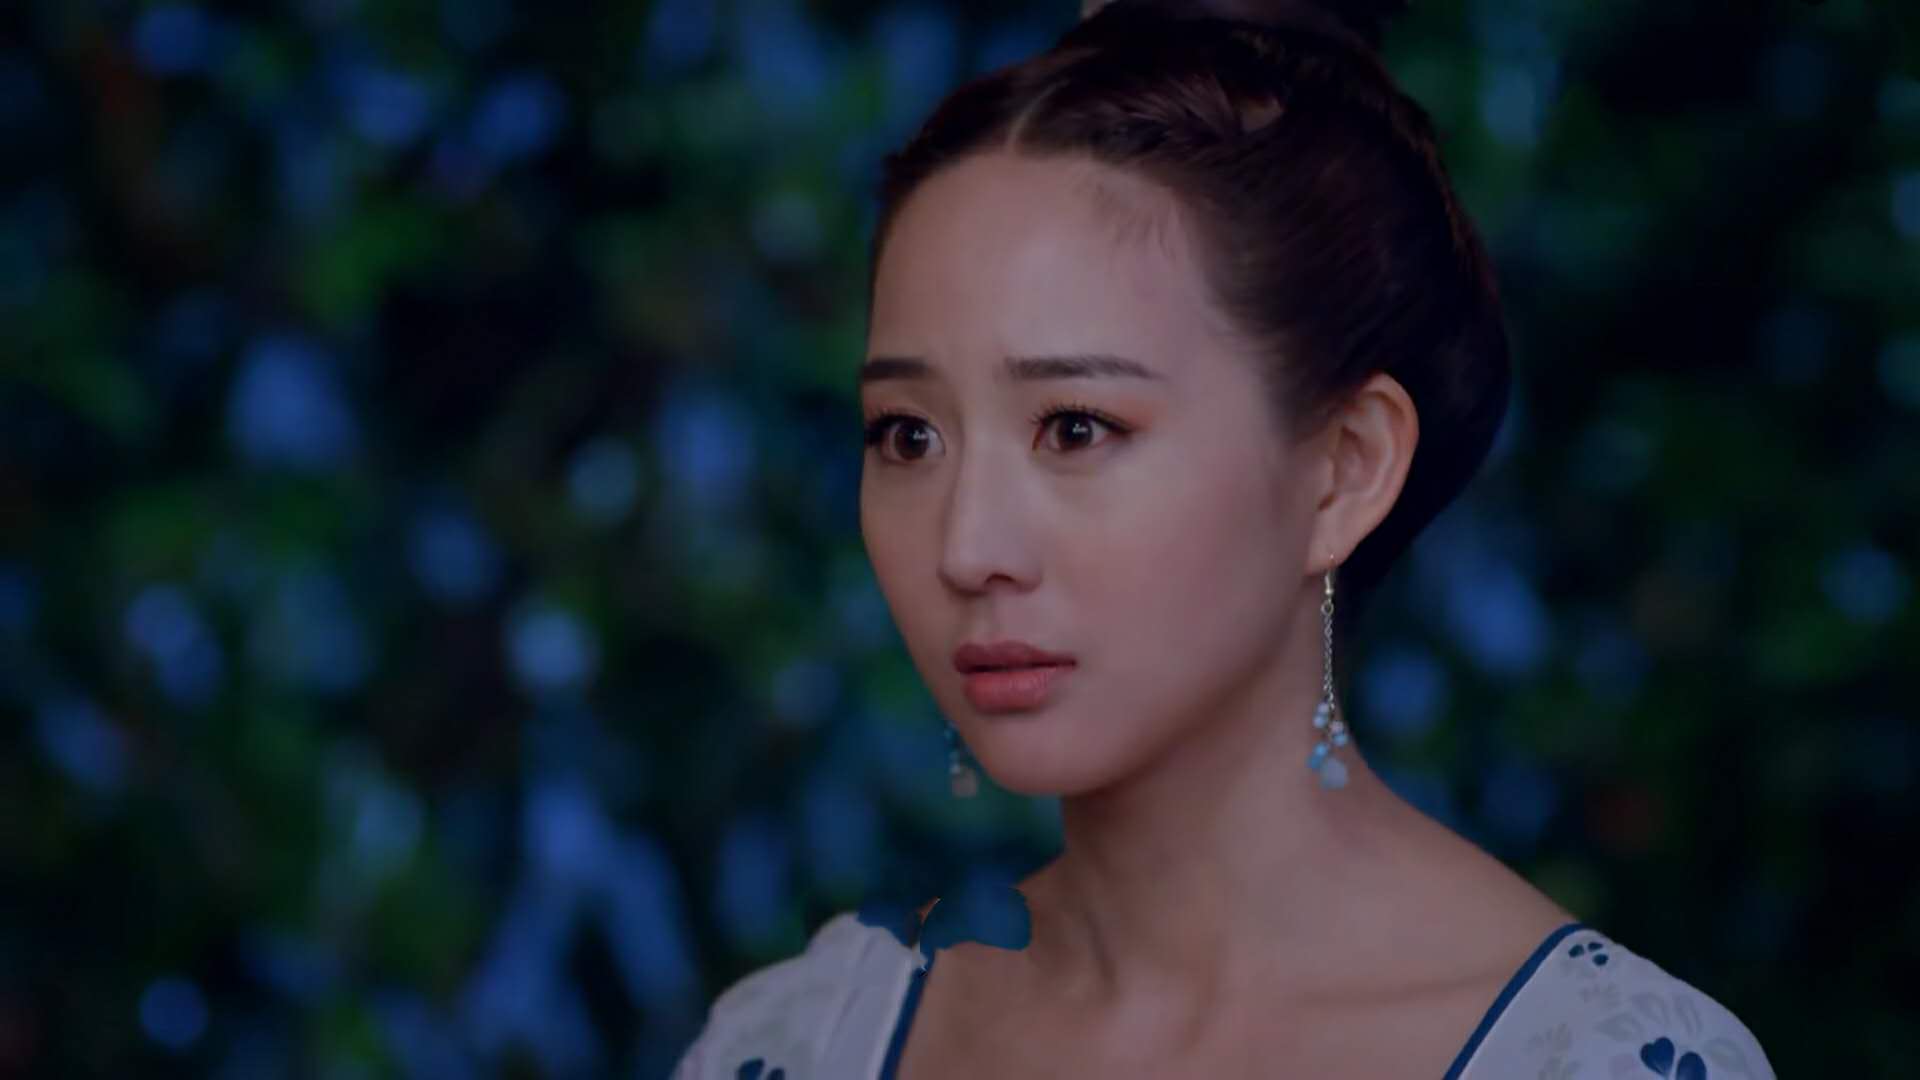 在2014年热播剧《武媚娘传奇》中,张钧甯饰徐慧一角,出身贫寒,有背影